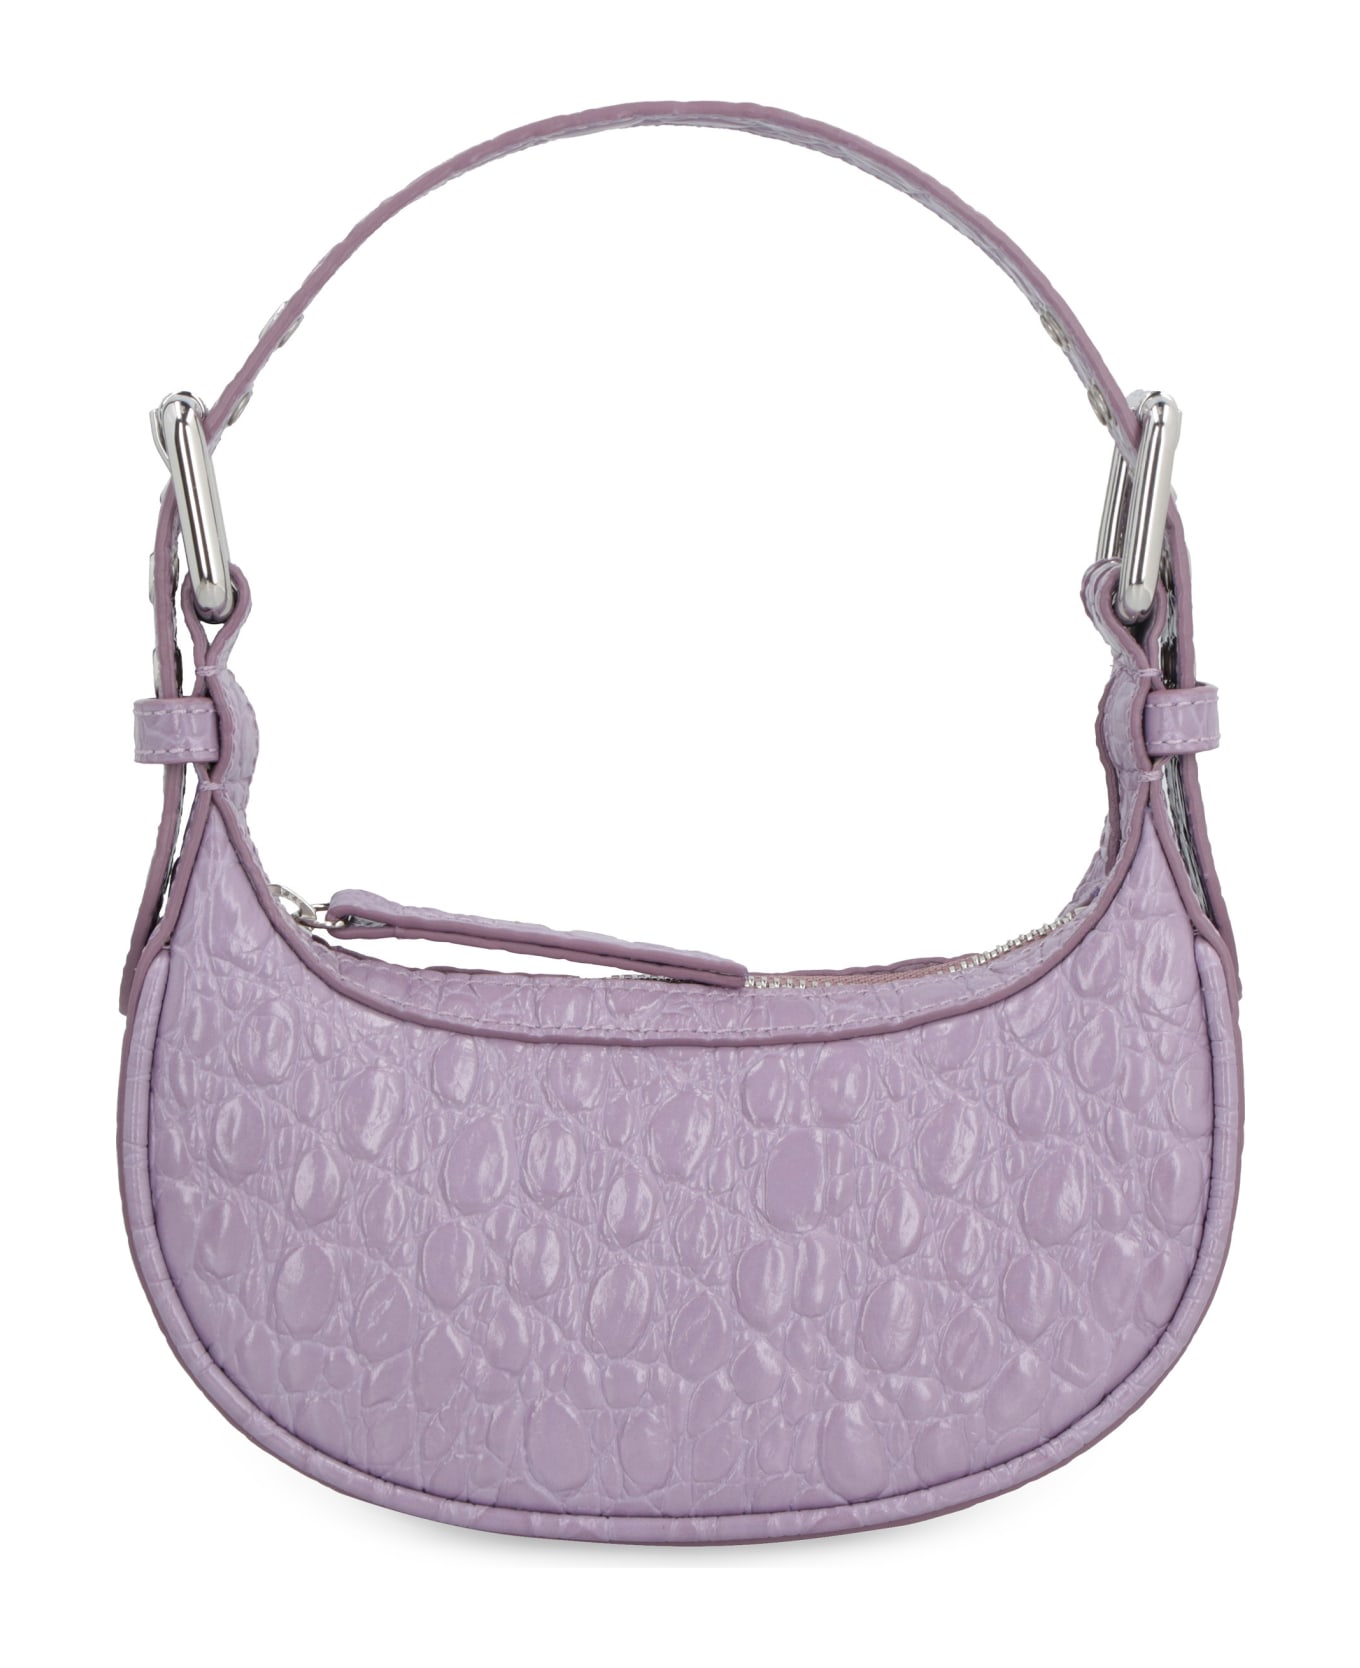 BY FAR Mini Soho Handbag - Lilac